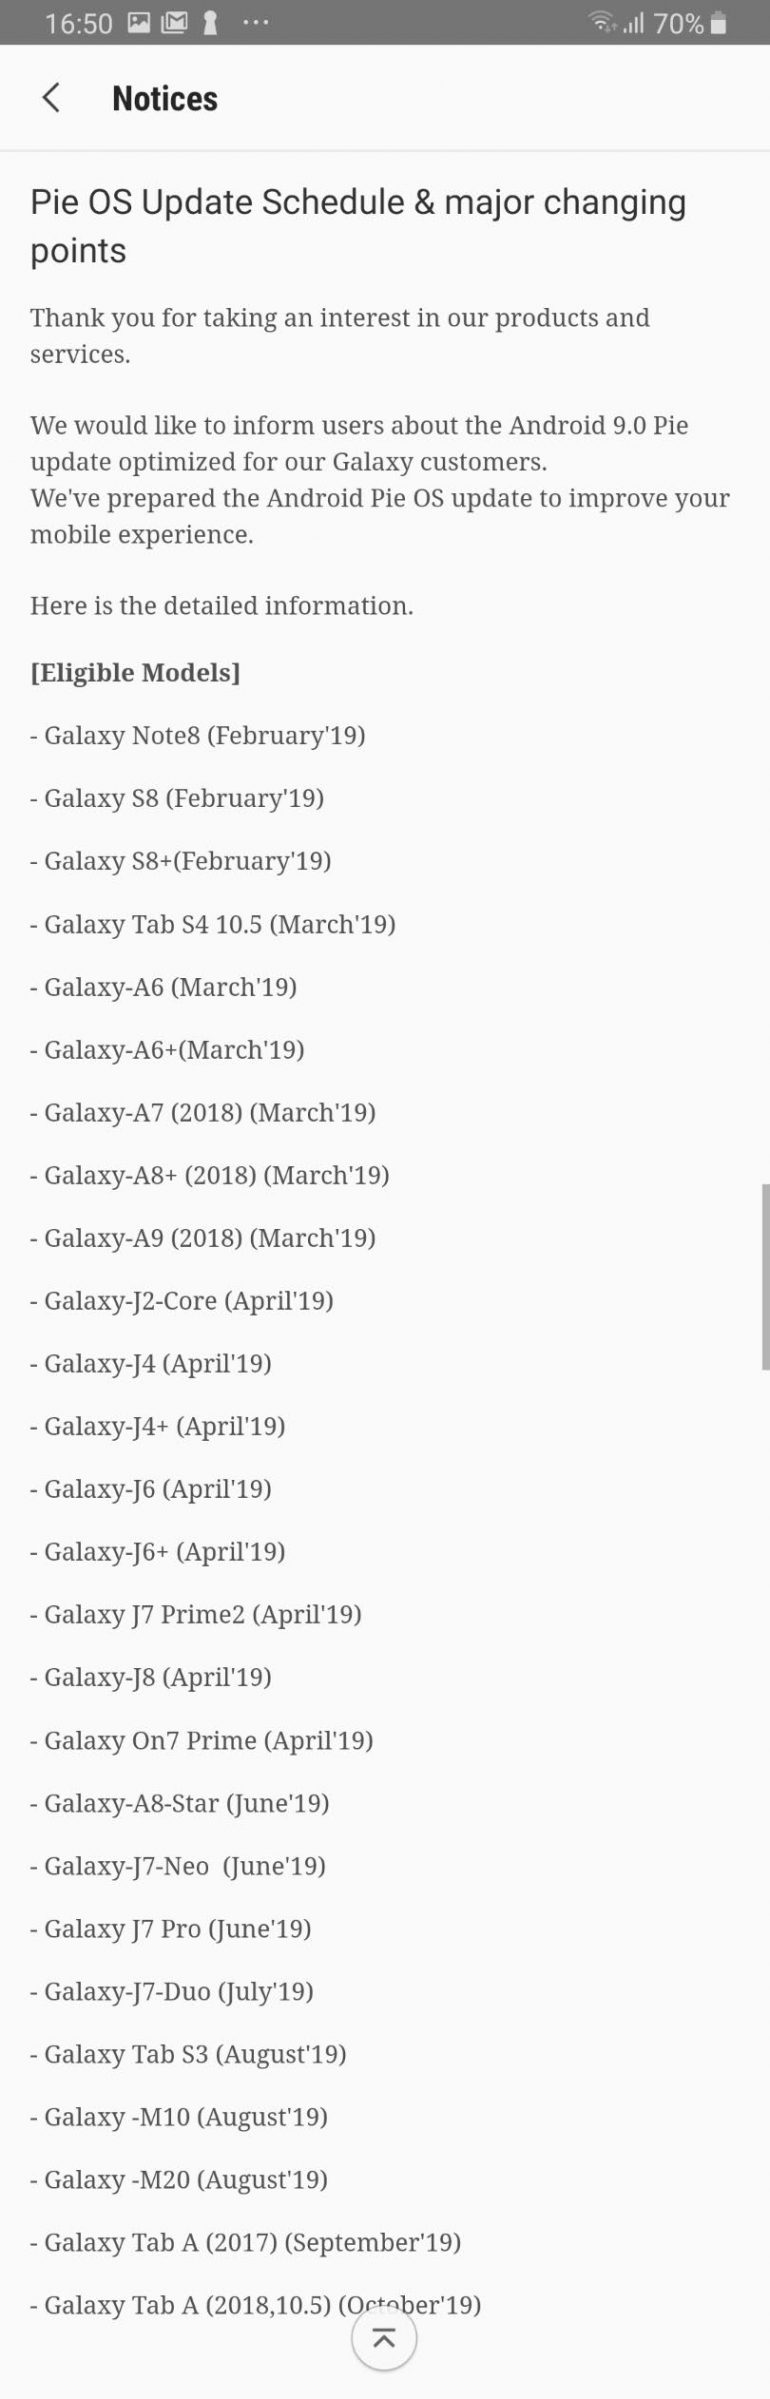 Появился уточненный график выхода Android 9.0 Pie для смартфонов Samsung, некоторые старые модели (даже бюджетные) получат апдейт на месяц раньше